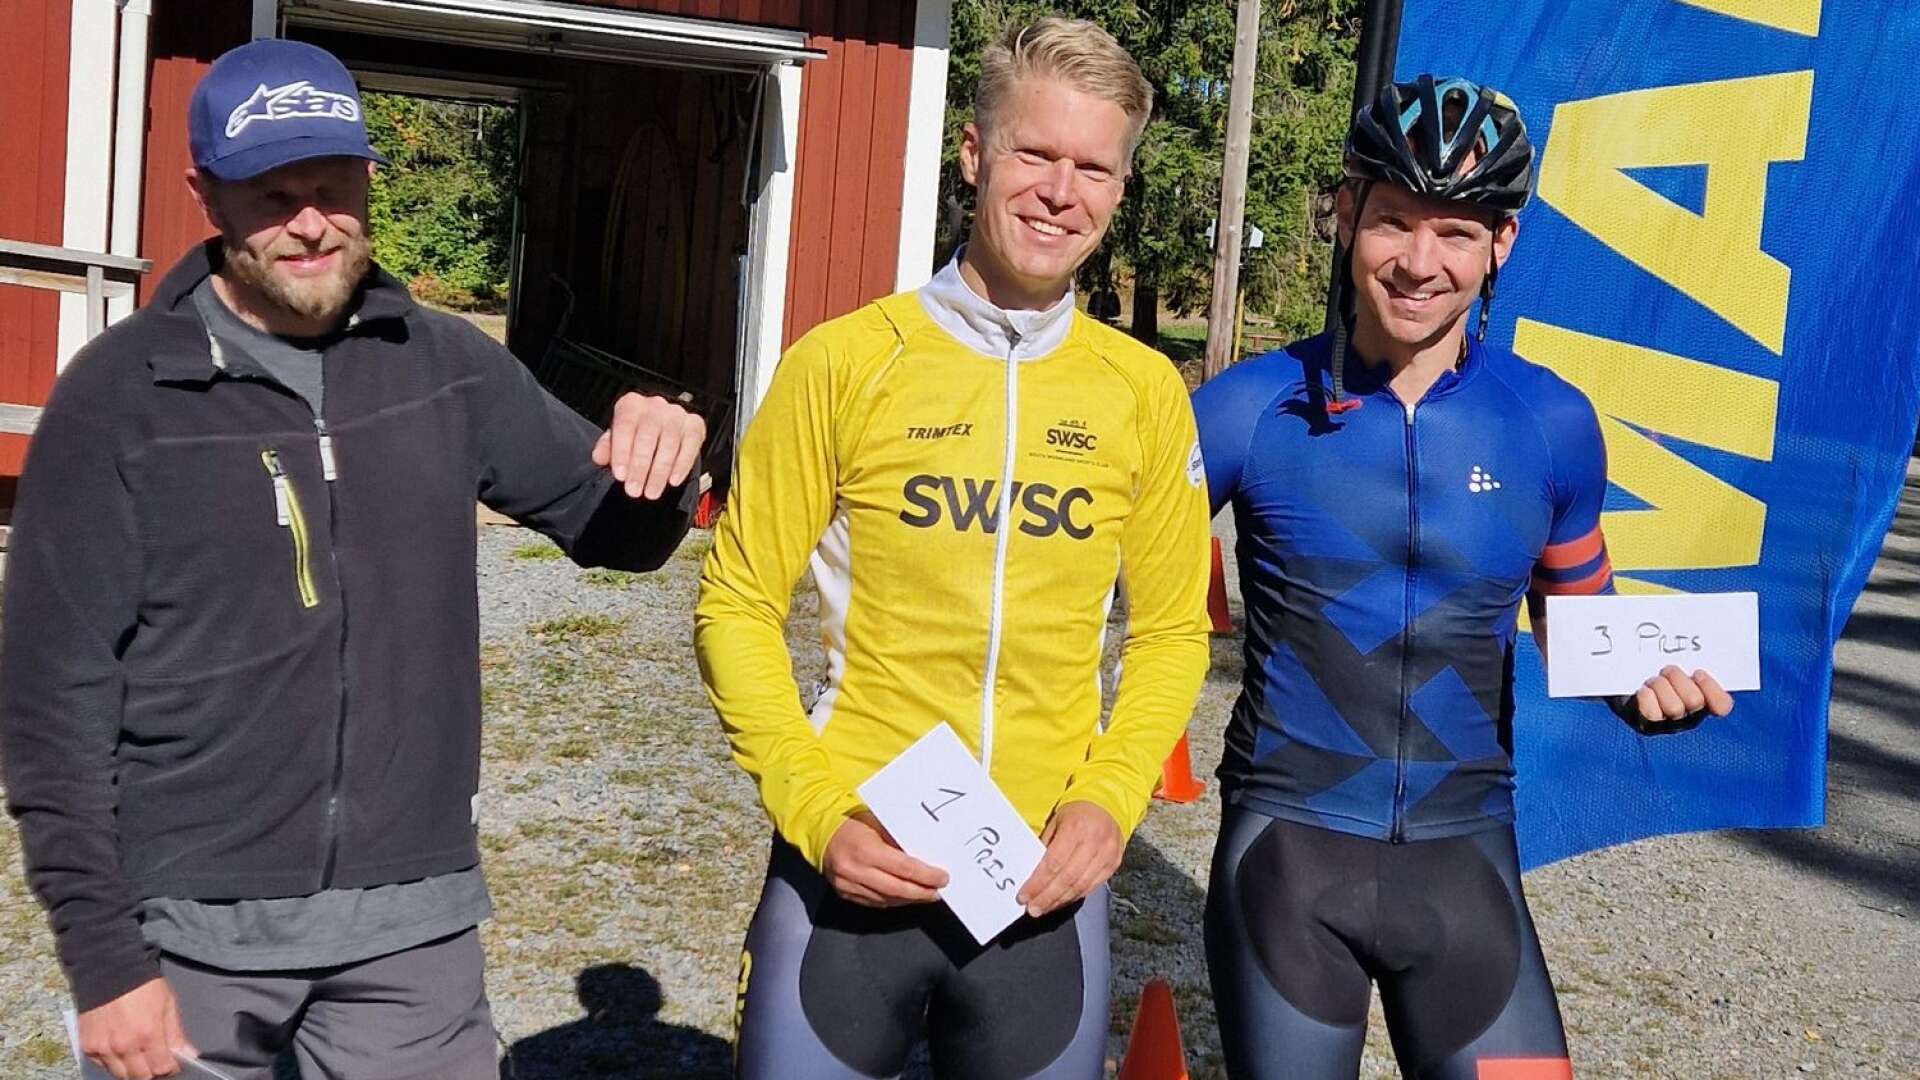 Vinnare i huvudklassen blev Jonas Askås som här ses tillsammans med tvåan Fredrik Randström och trean Markus Johansson Svärd.